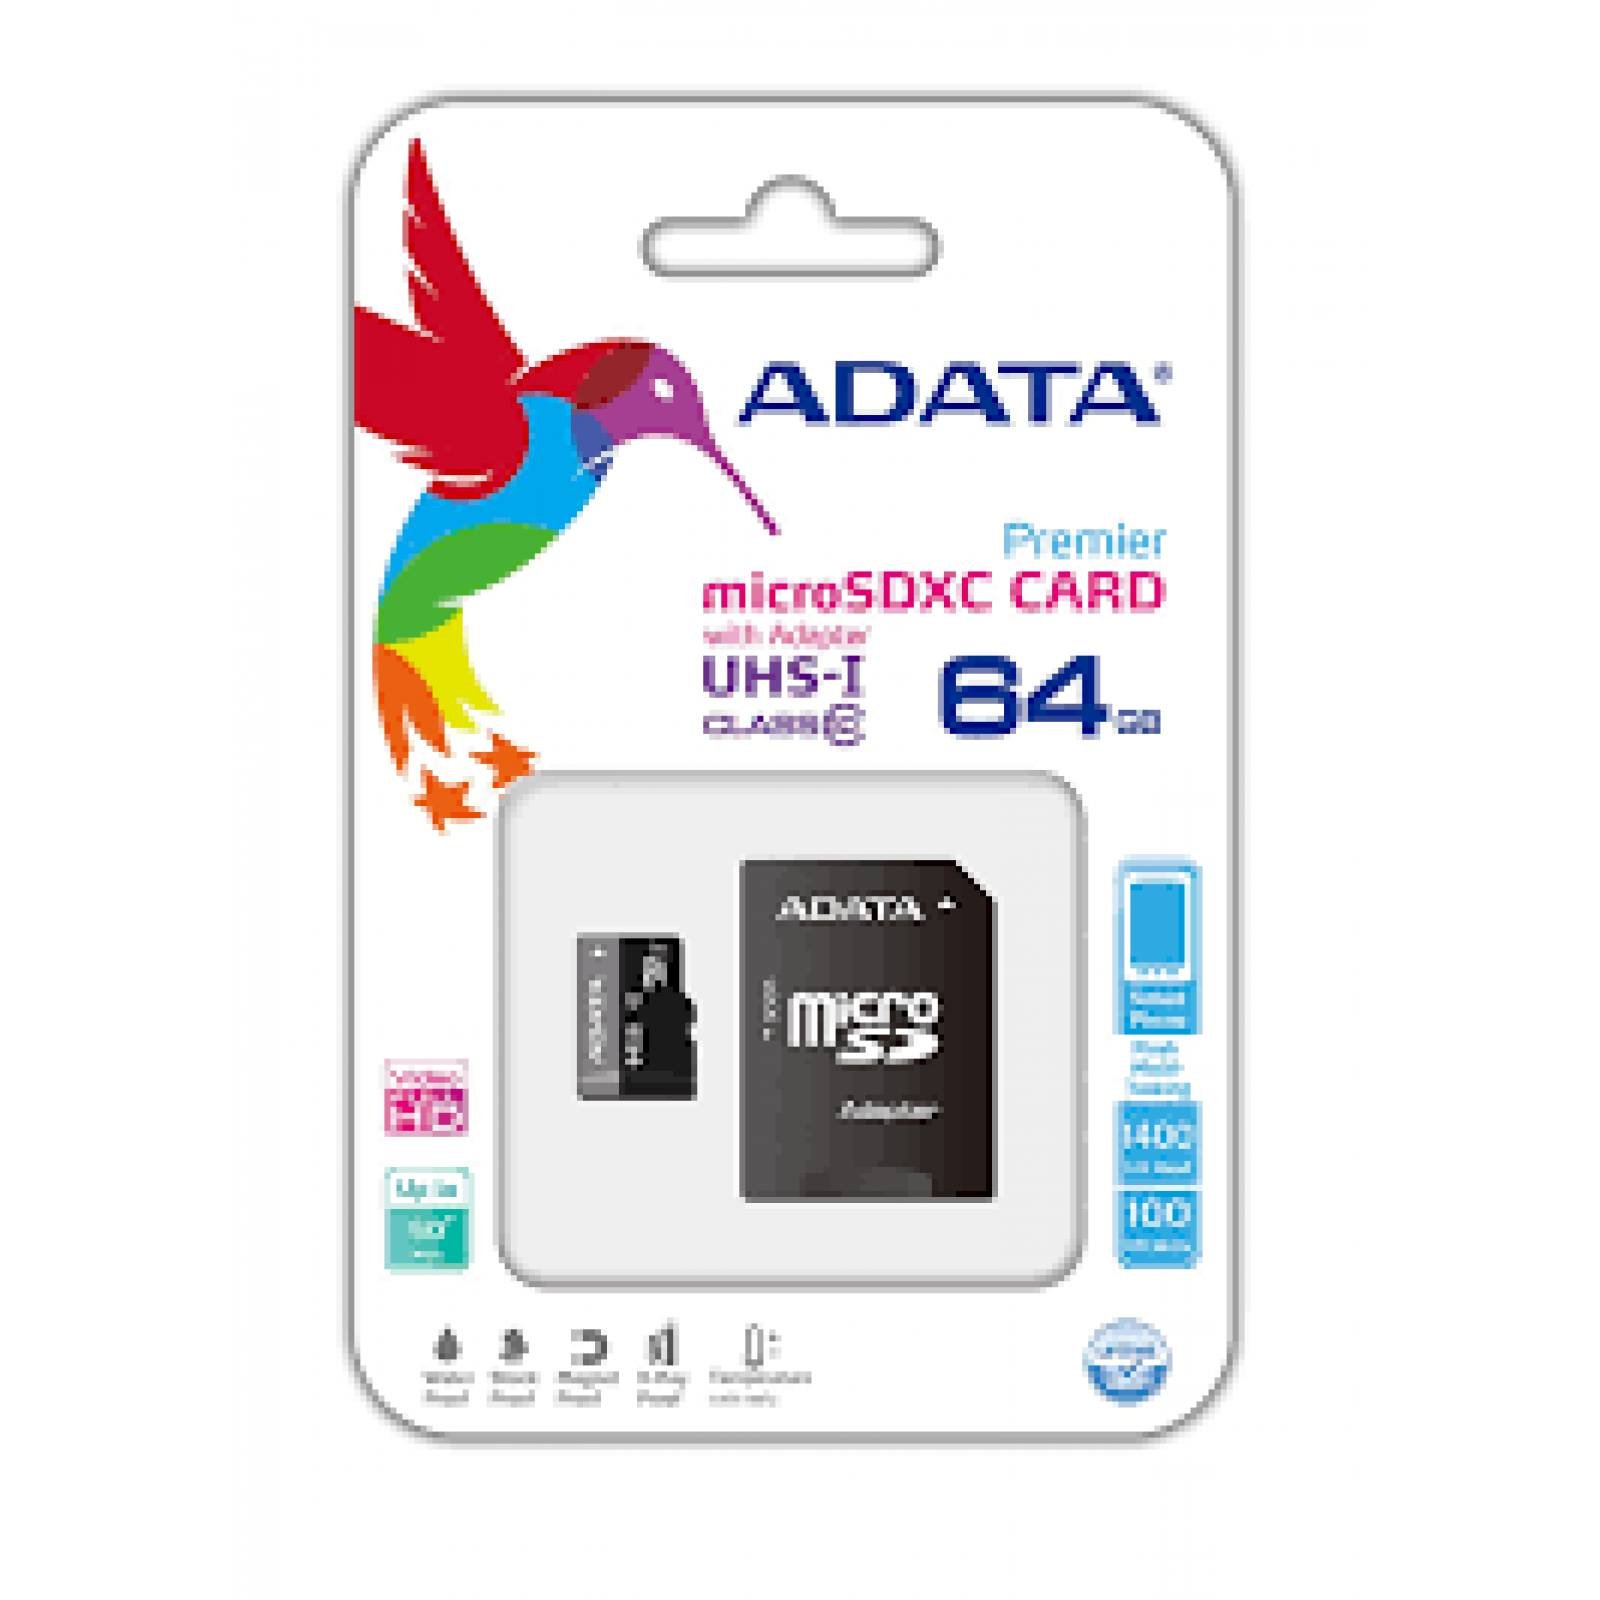 Memoria Flash Adata 64GB MicroSDHC Clase 10 C/Adaptador